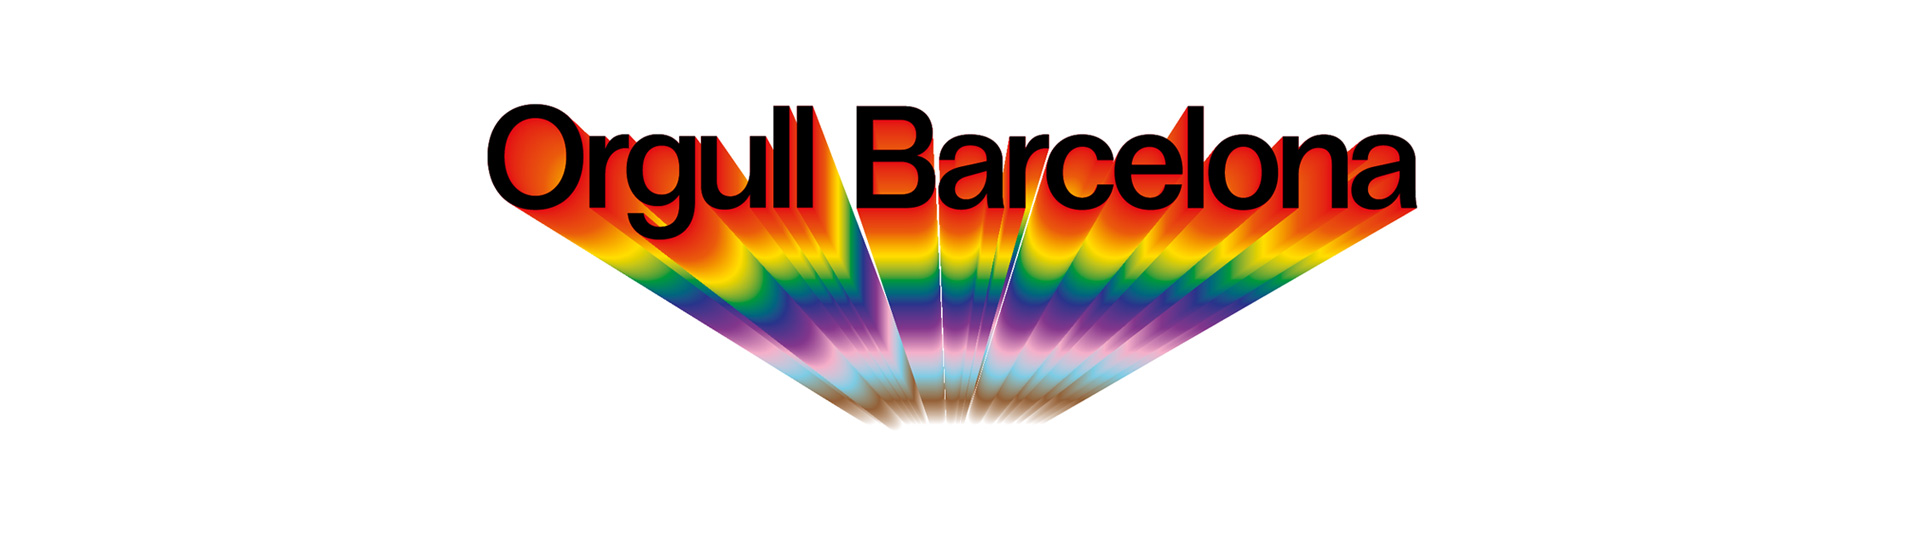 Orgull Barcelona